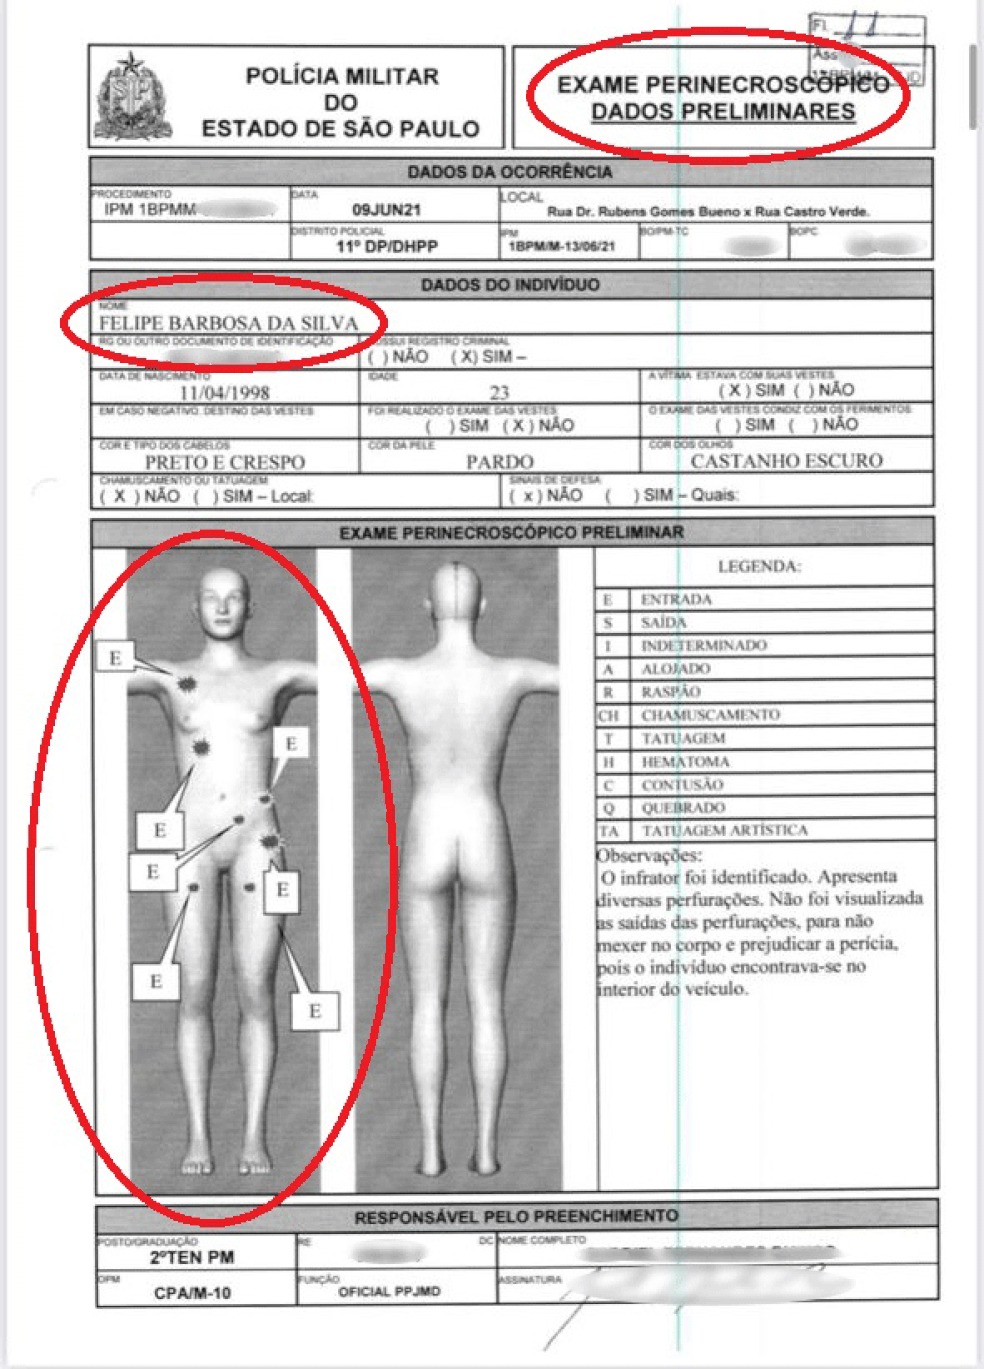 Cópia do documento feito pela Polícia Militar (PM) mostra que Felipe Barbosa da Silva teve sete perfurações de tiros no corpo — Foto: Reprodução/Polícia Militar de SP